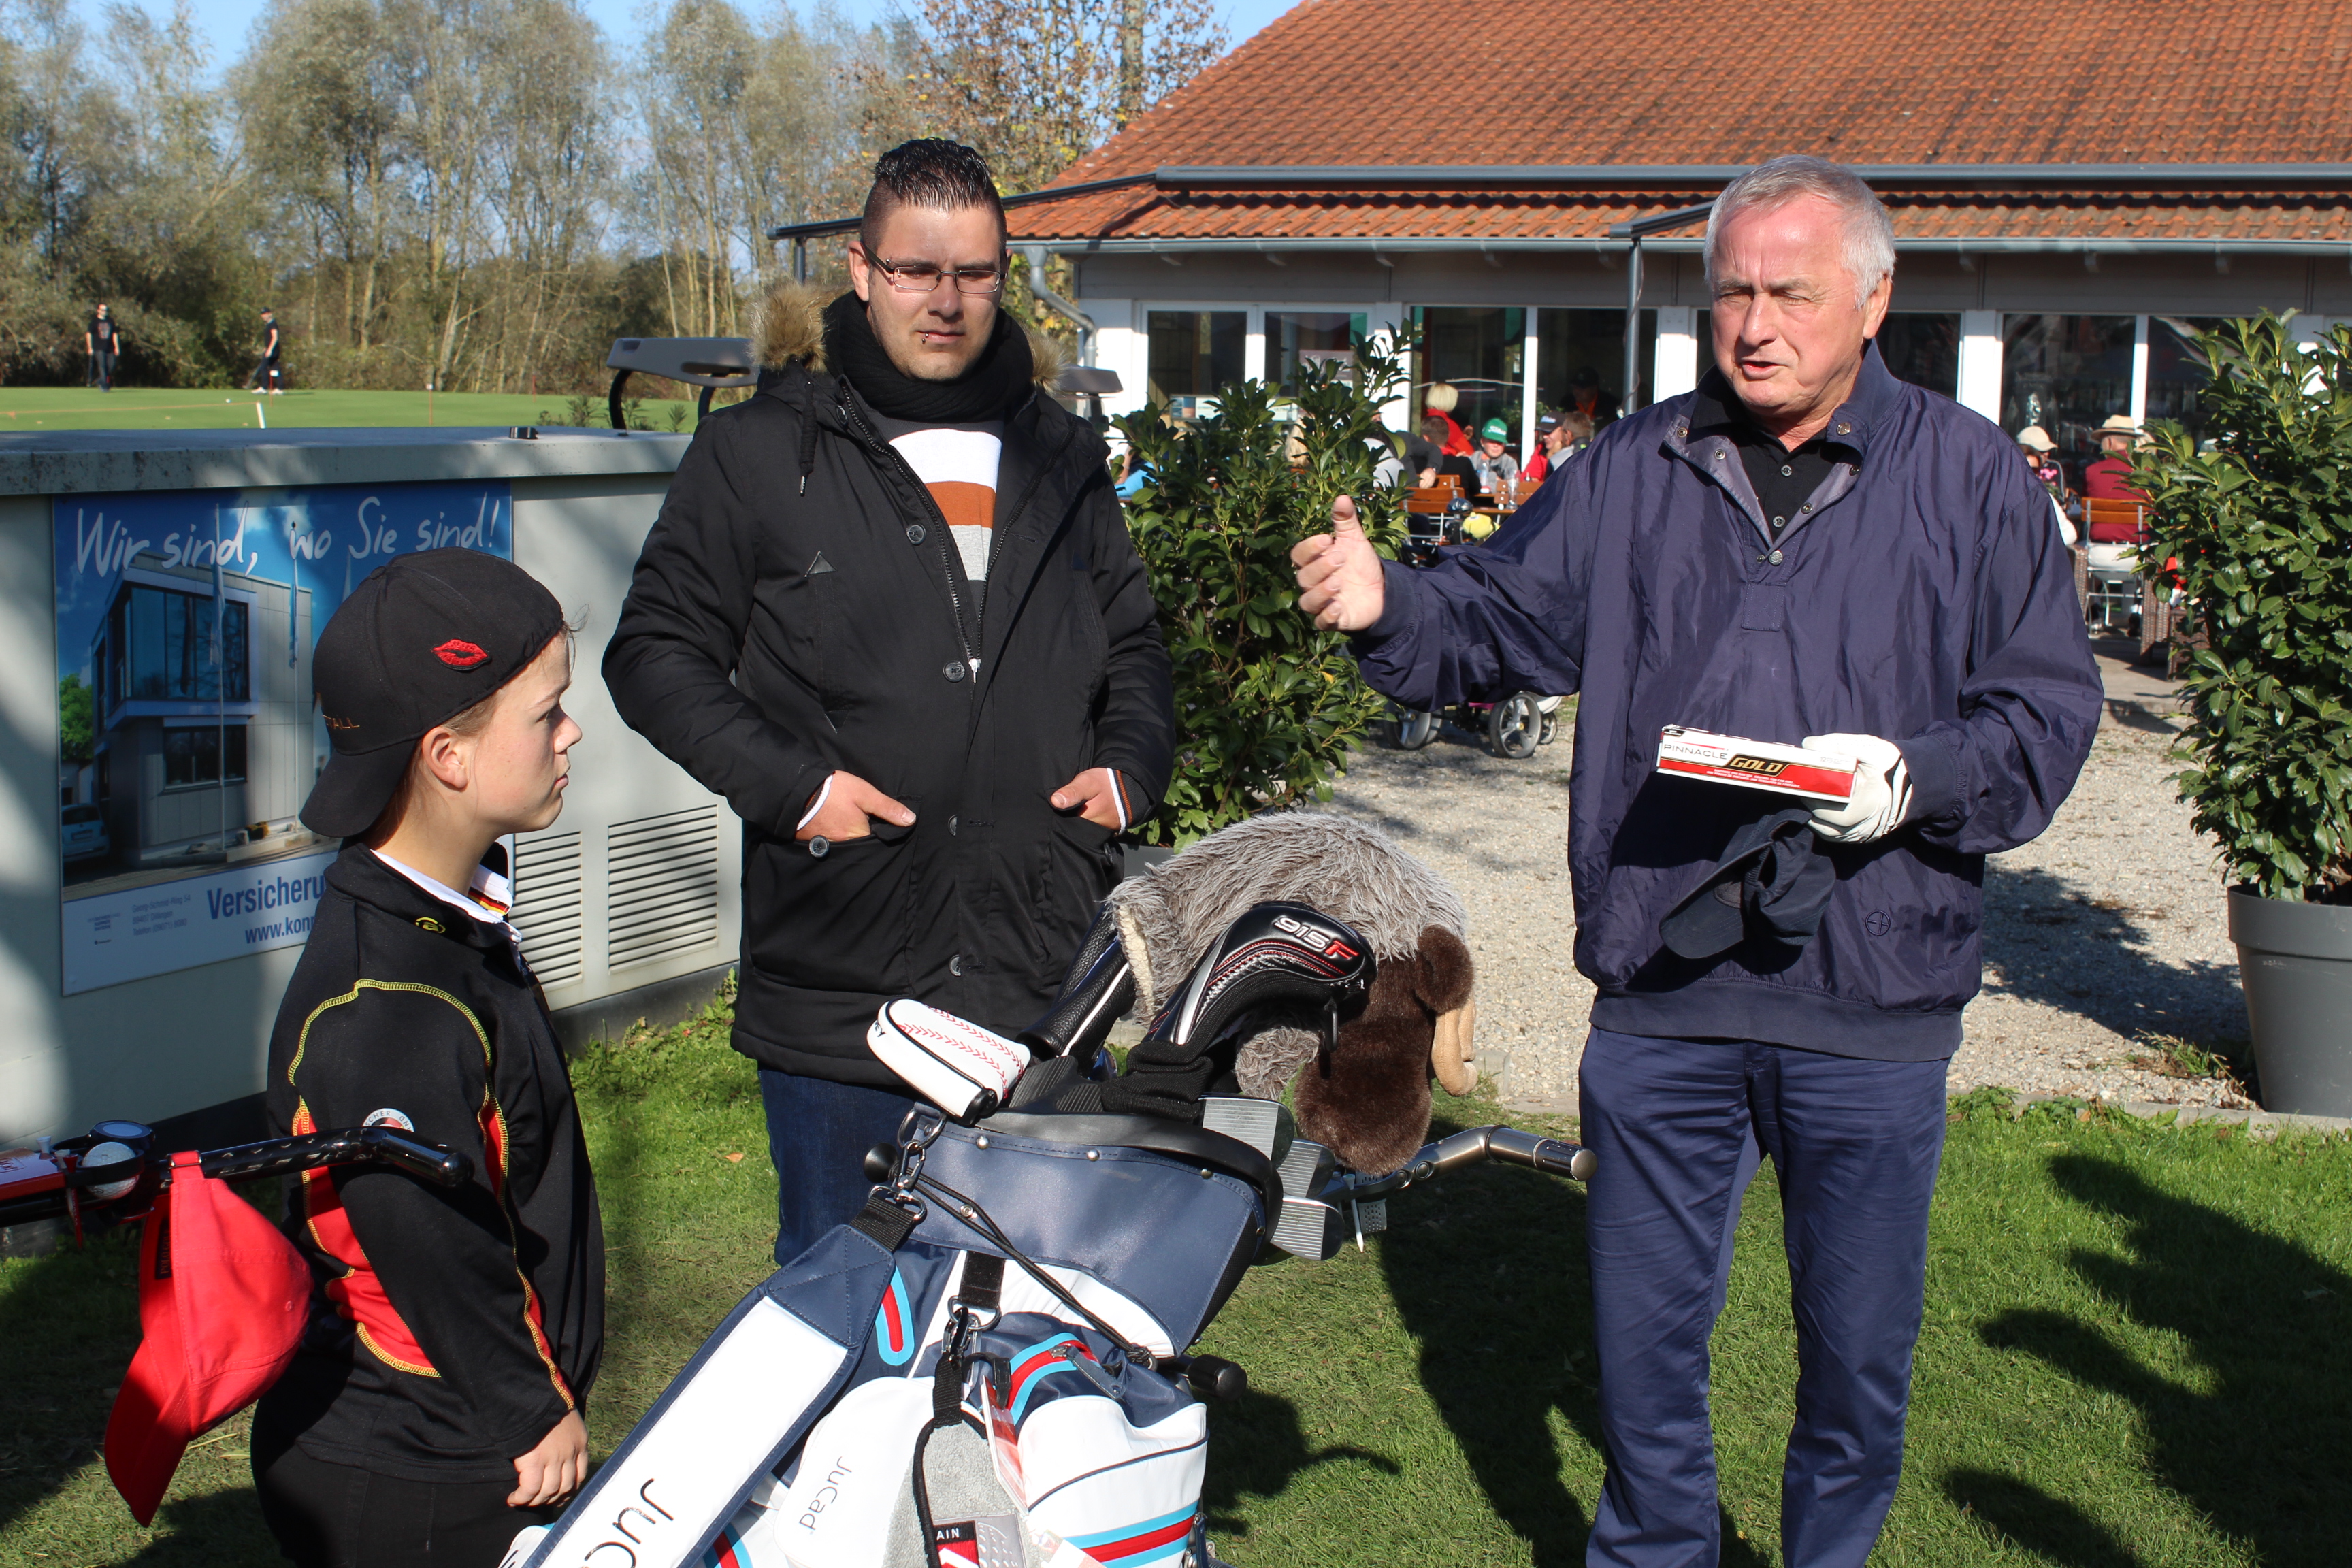 Inklusives Golfspiel in Dillingen zeigt: Barrieren bestehen eher außerhalb des Golfplatzes